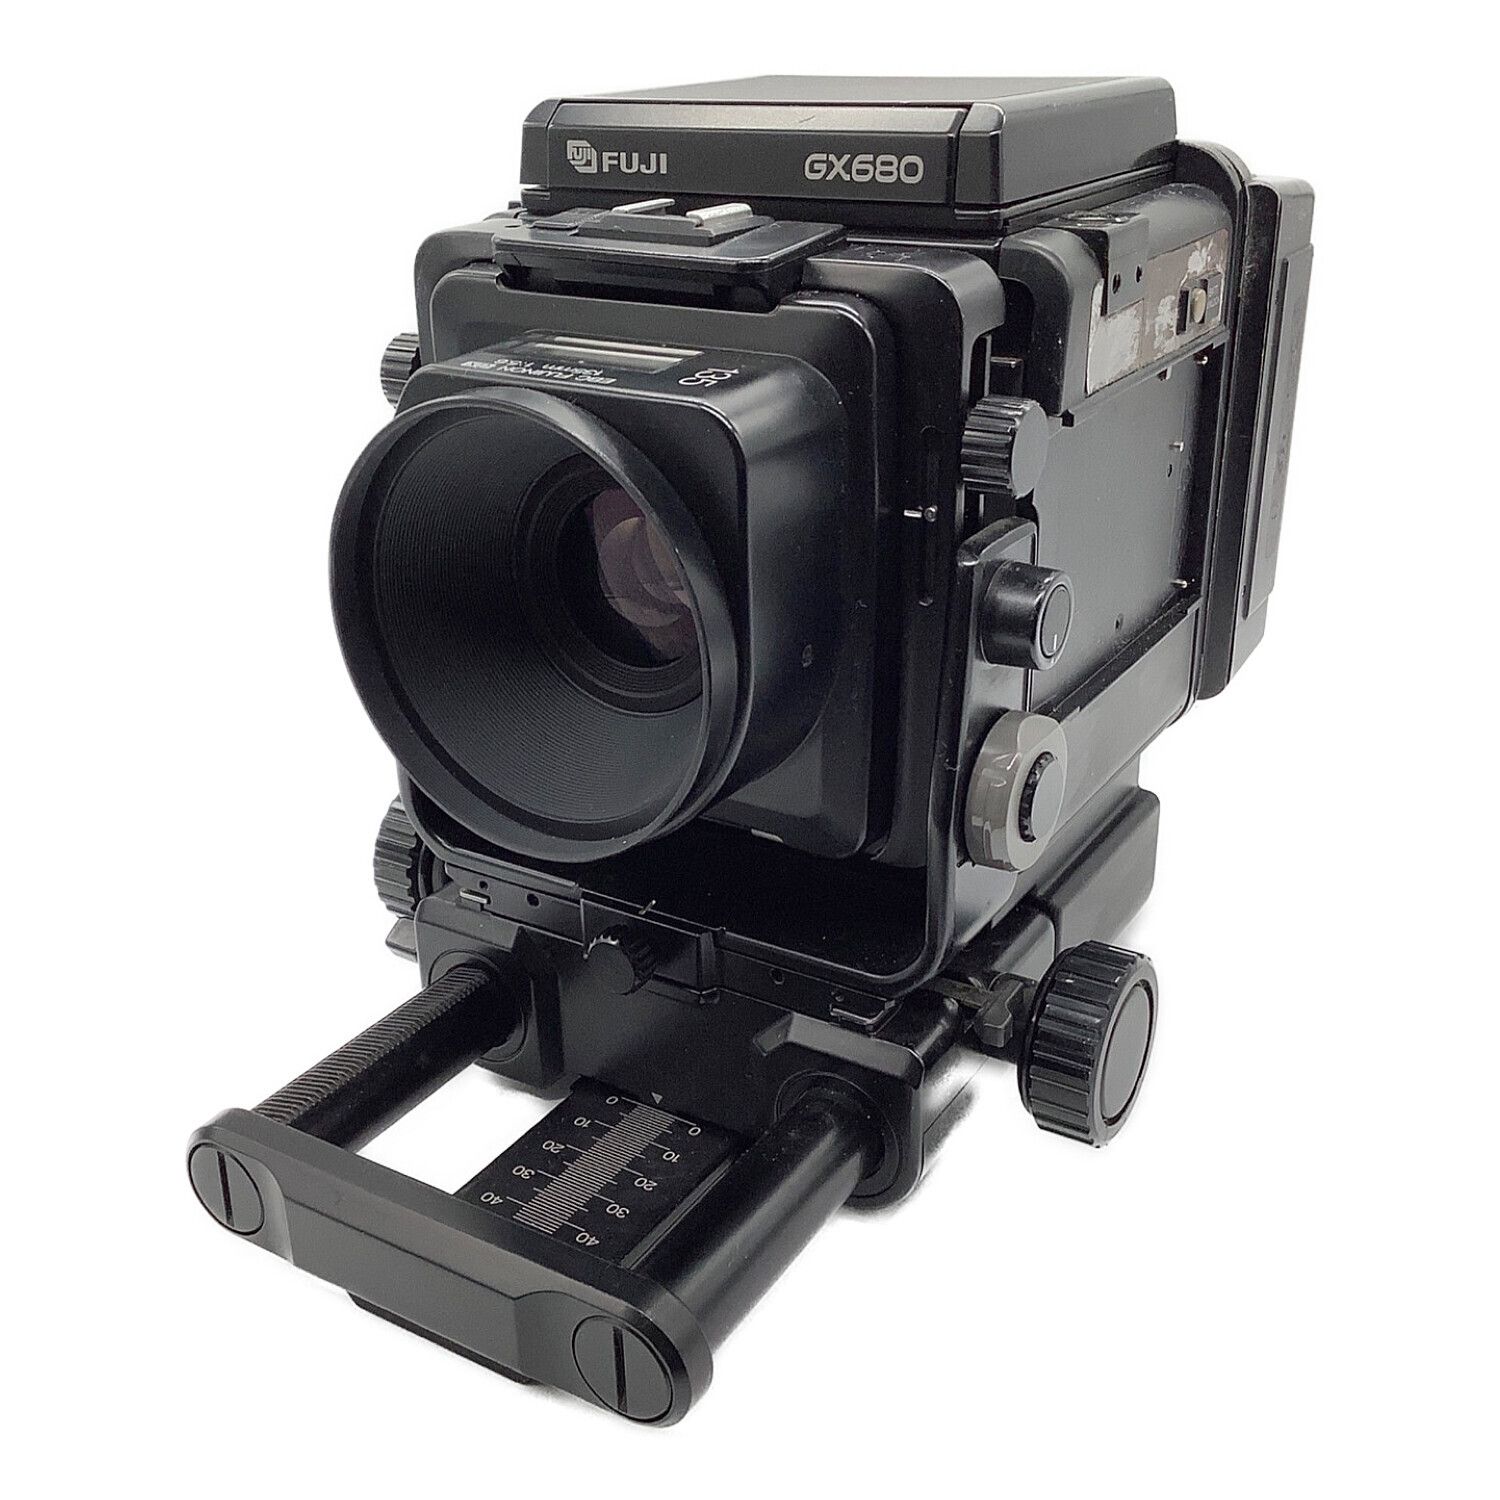 FUJIFILM (フジフィルム) 中判カメラ GX680 ジャンク品 保証無し